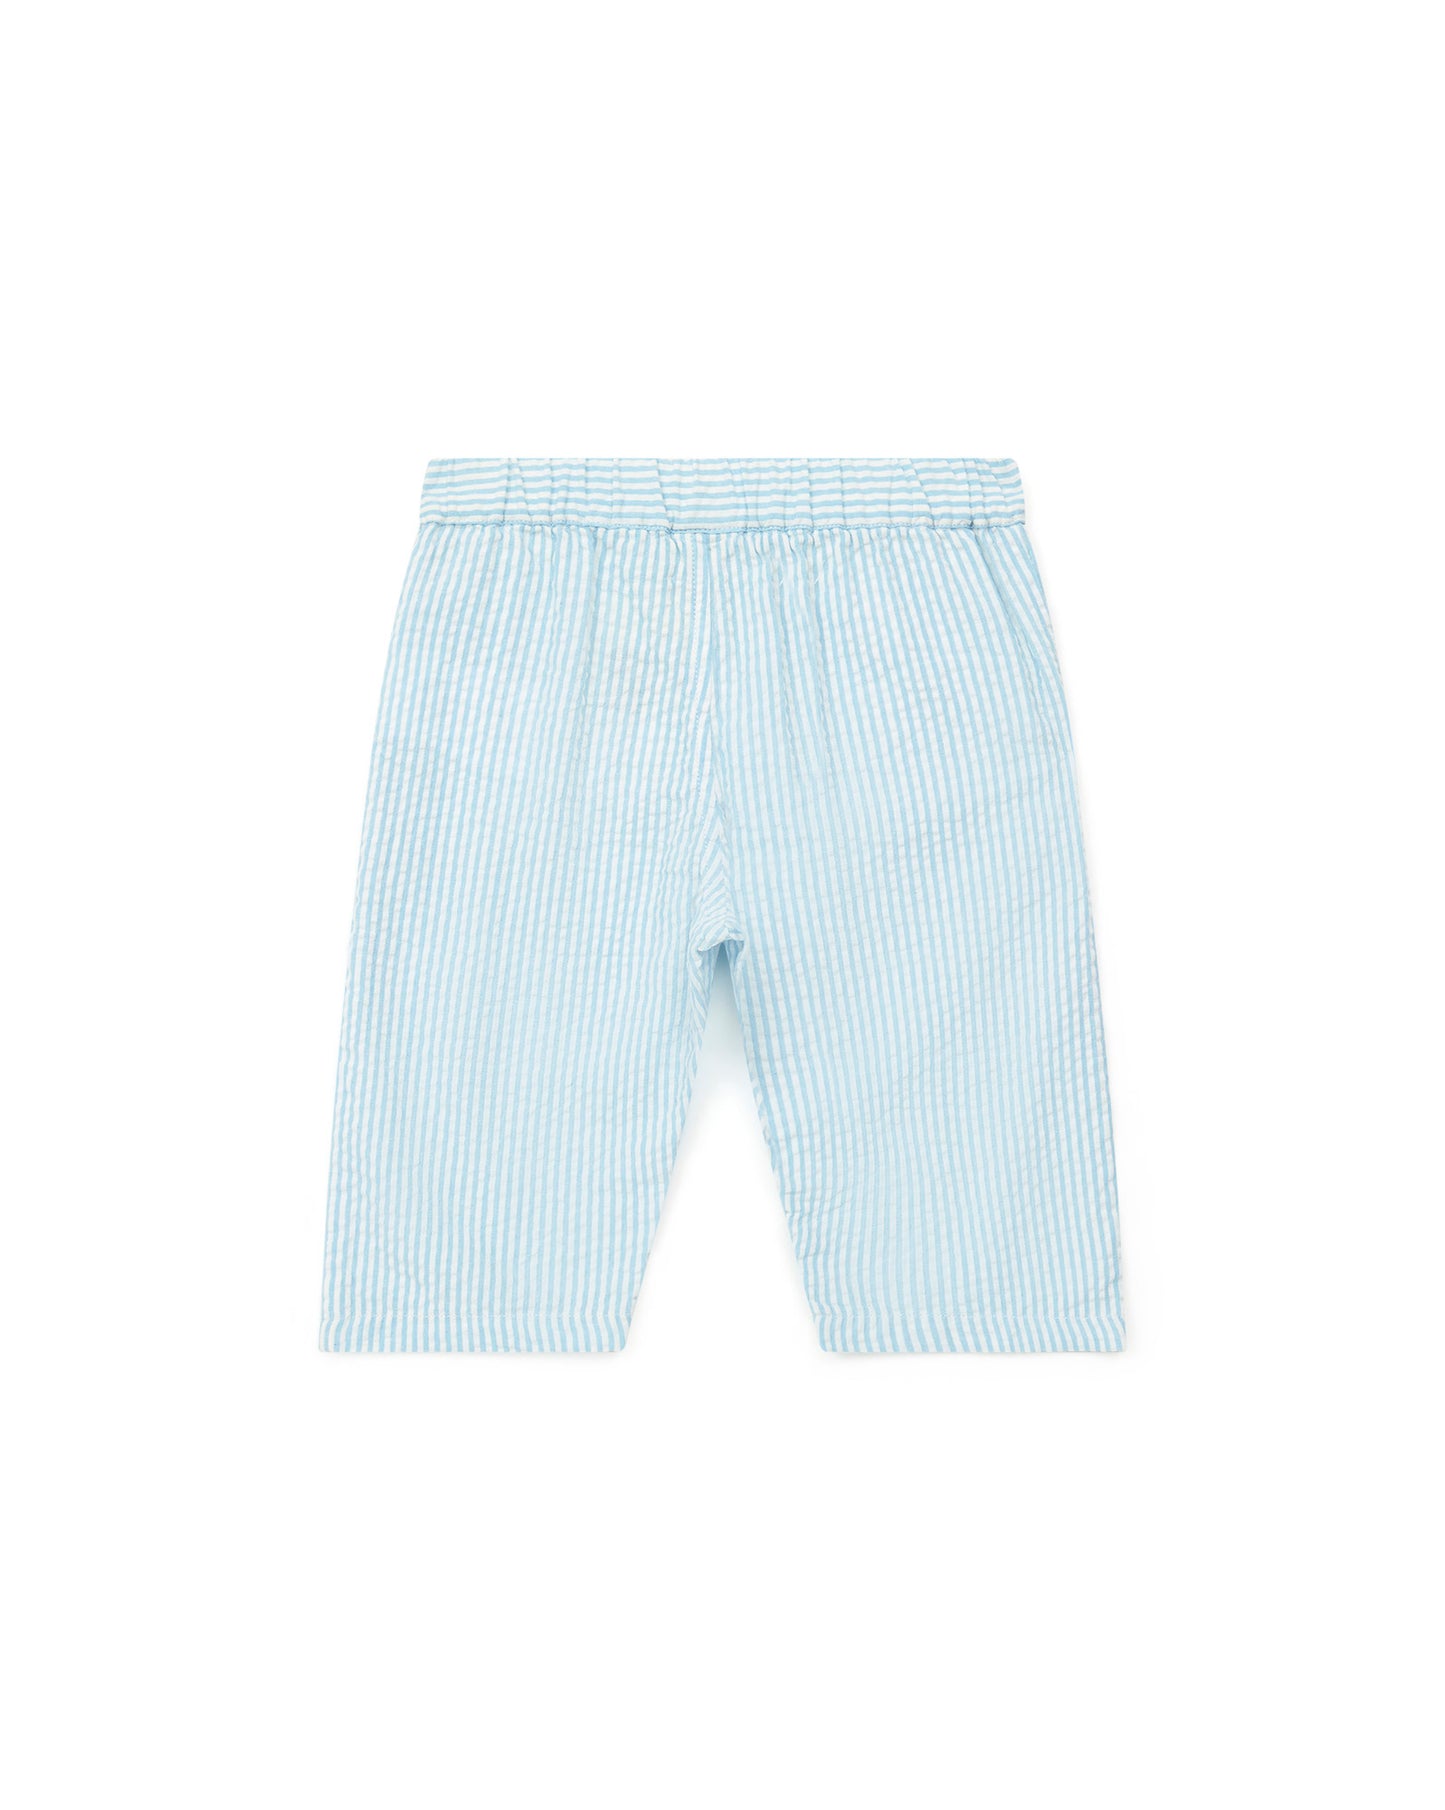 Pantalon - bébé uni 100% coton